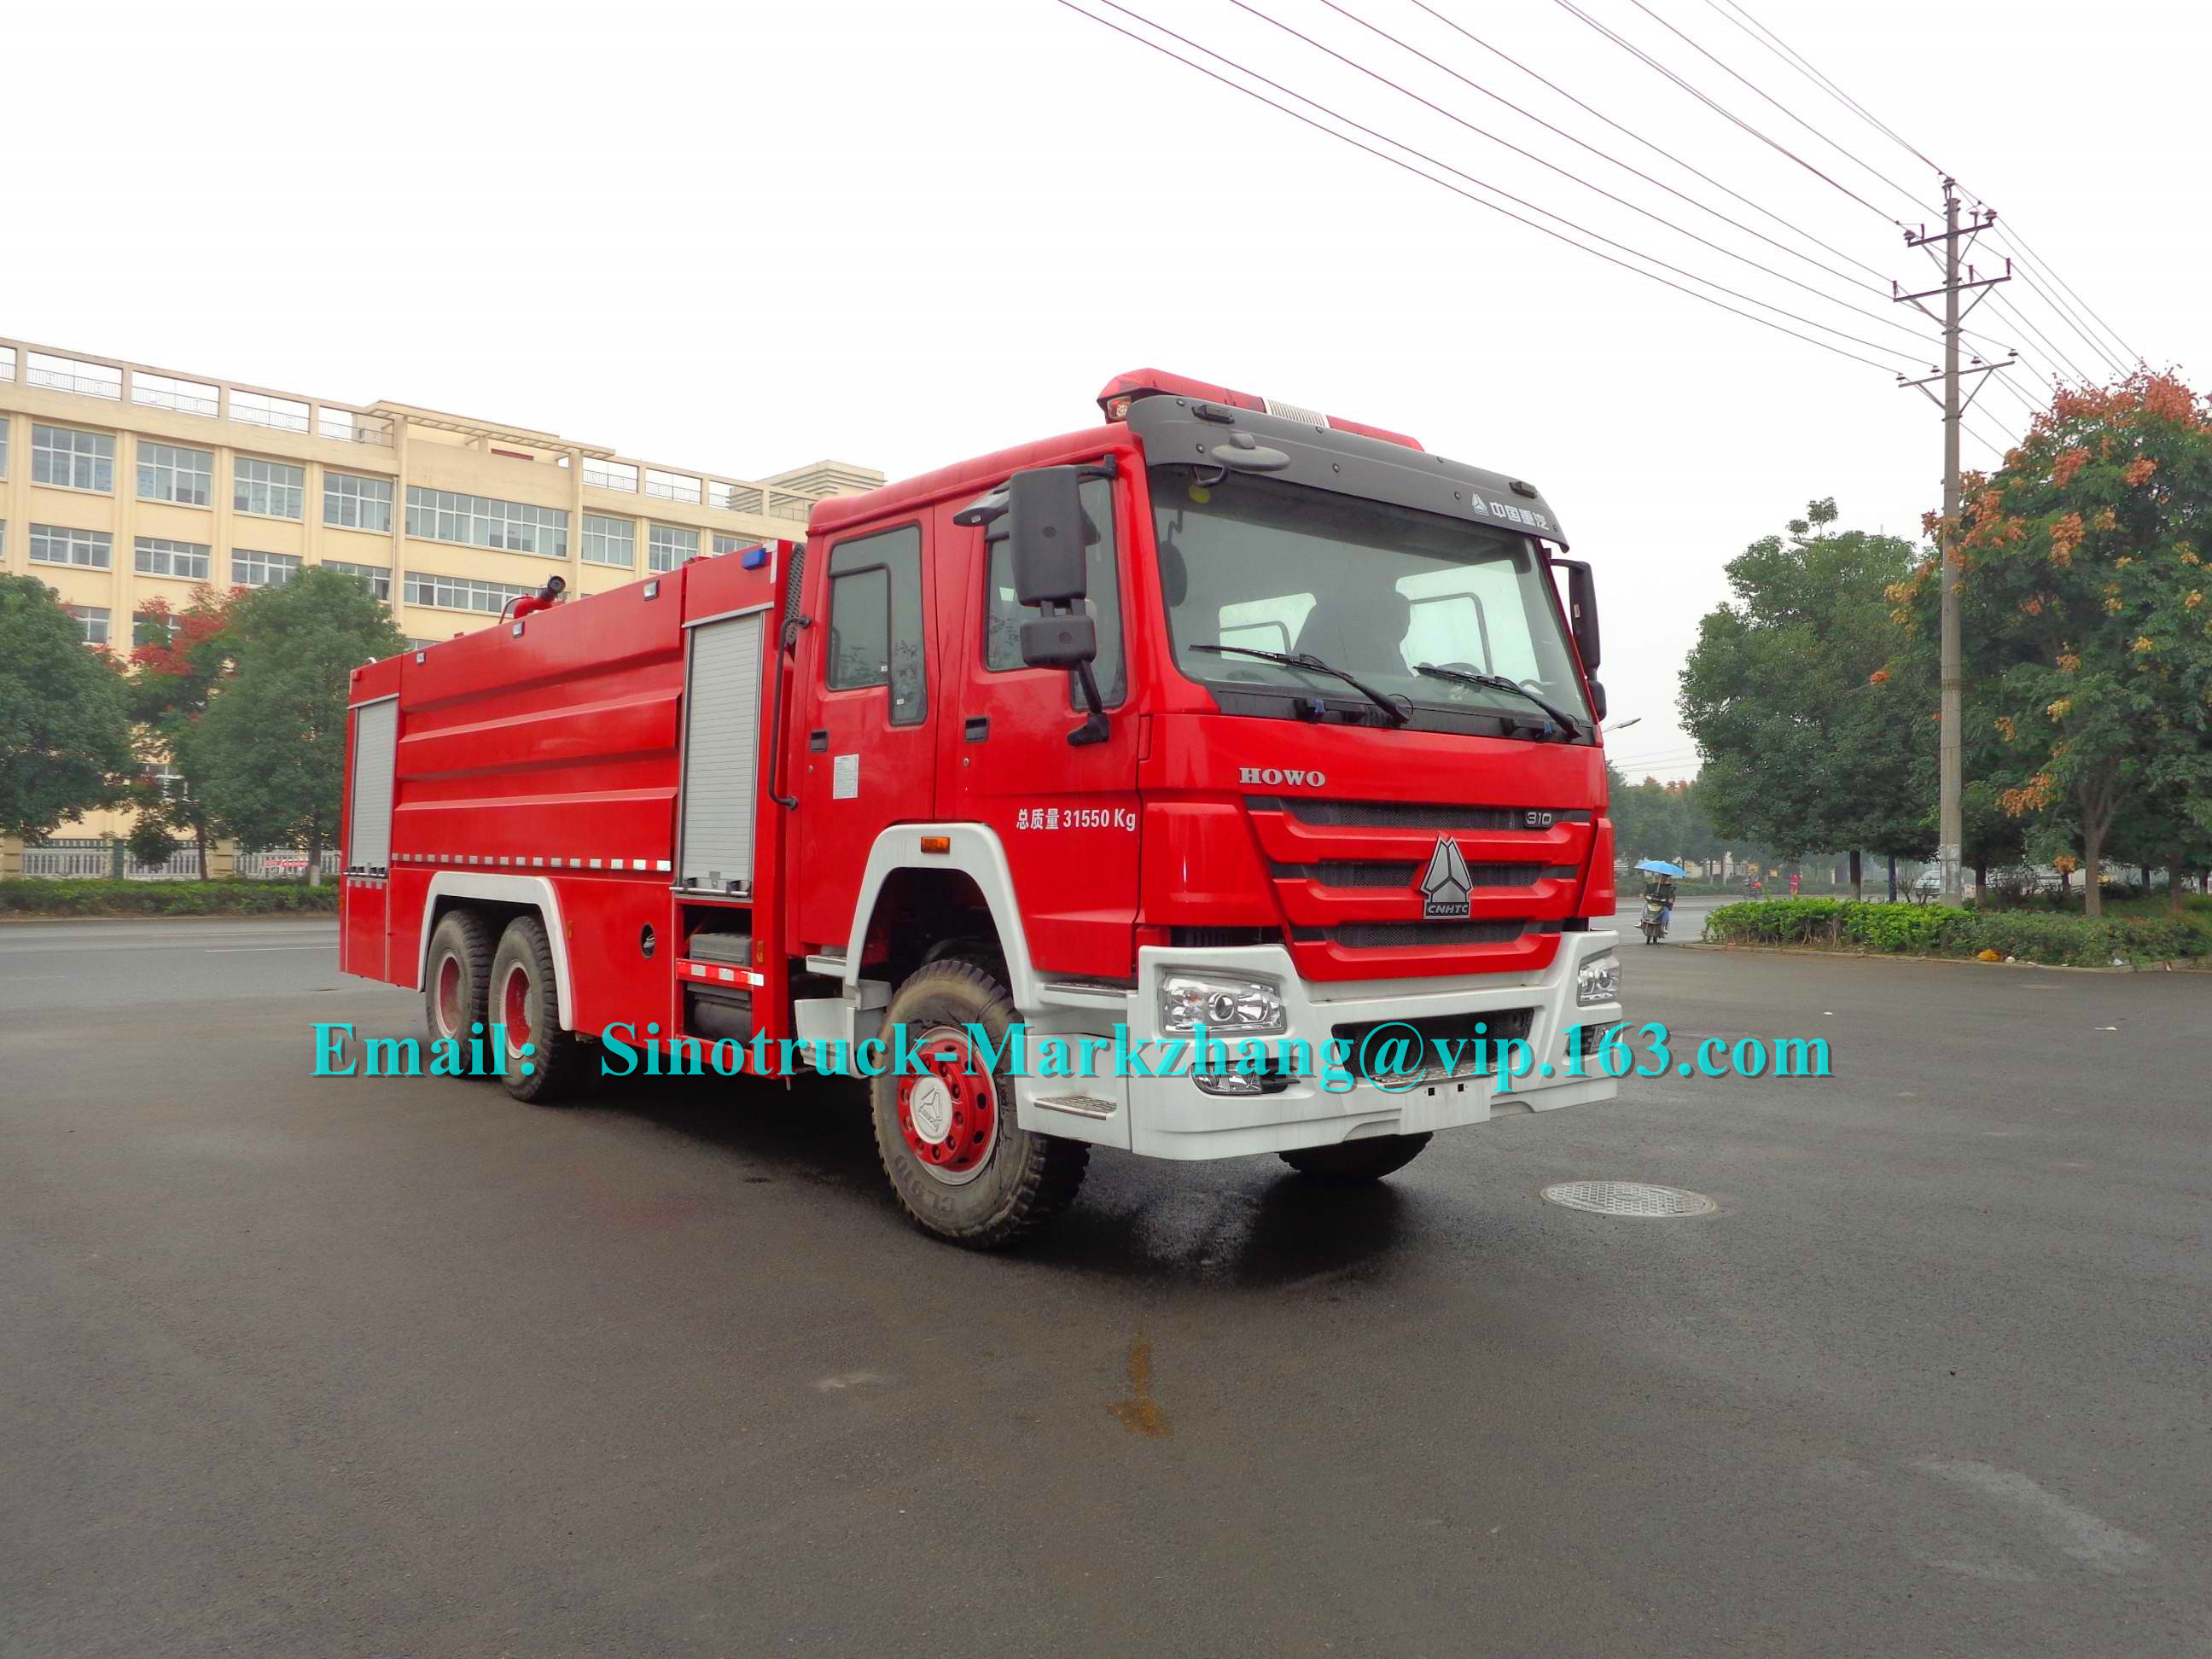 10 dirección del árbol LHD/RHD de los vehículos 3 del coche de bomberos del camión del departamento de bomberos de la seguridad de los policías motorizados